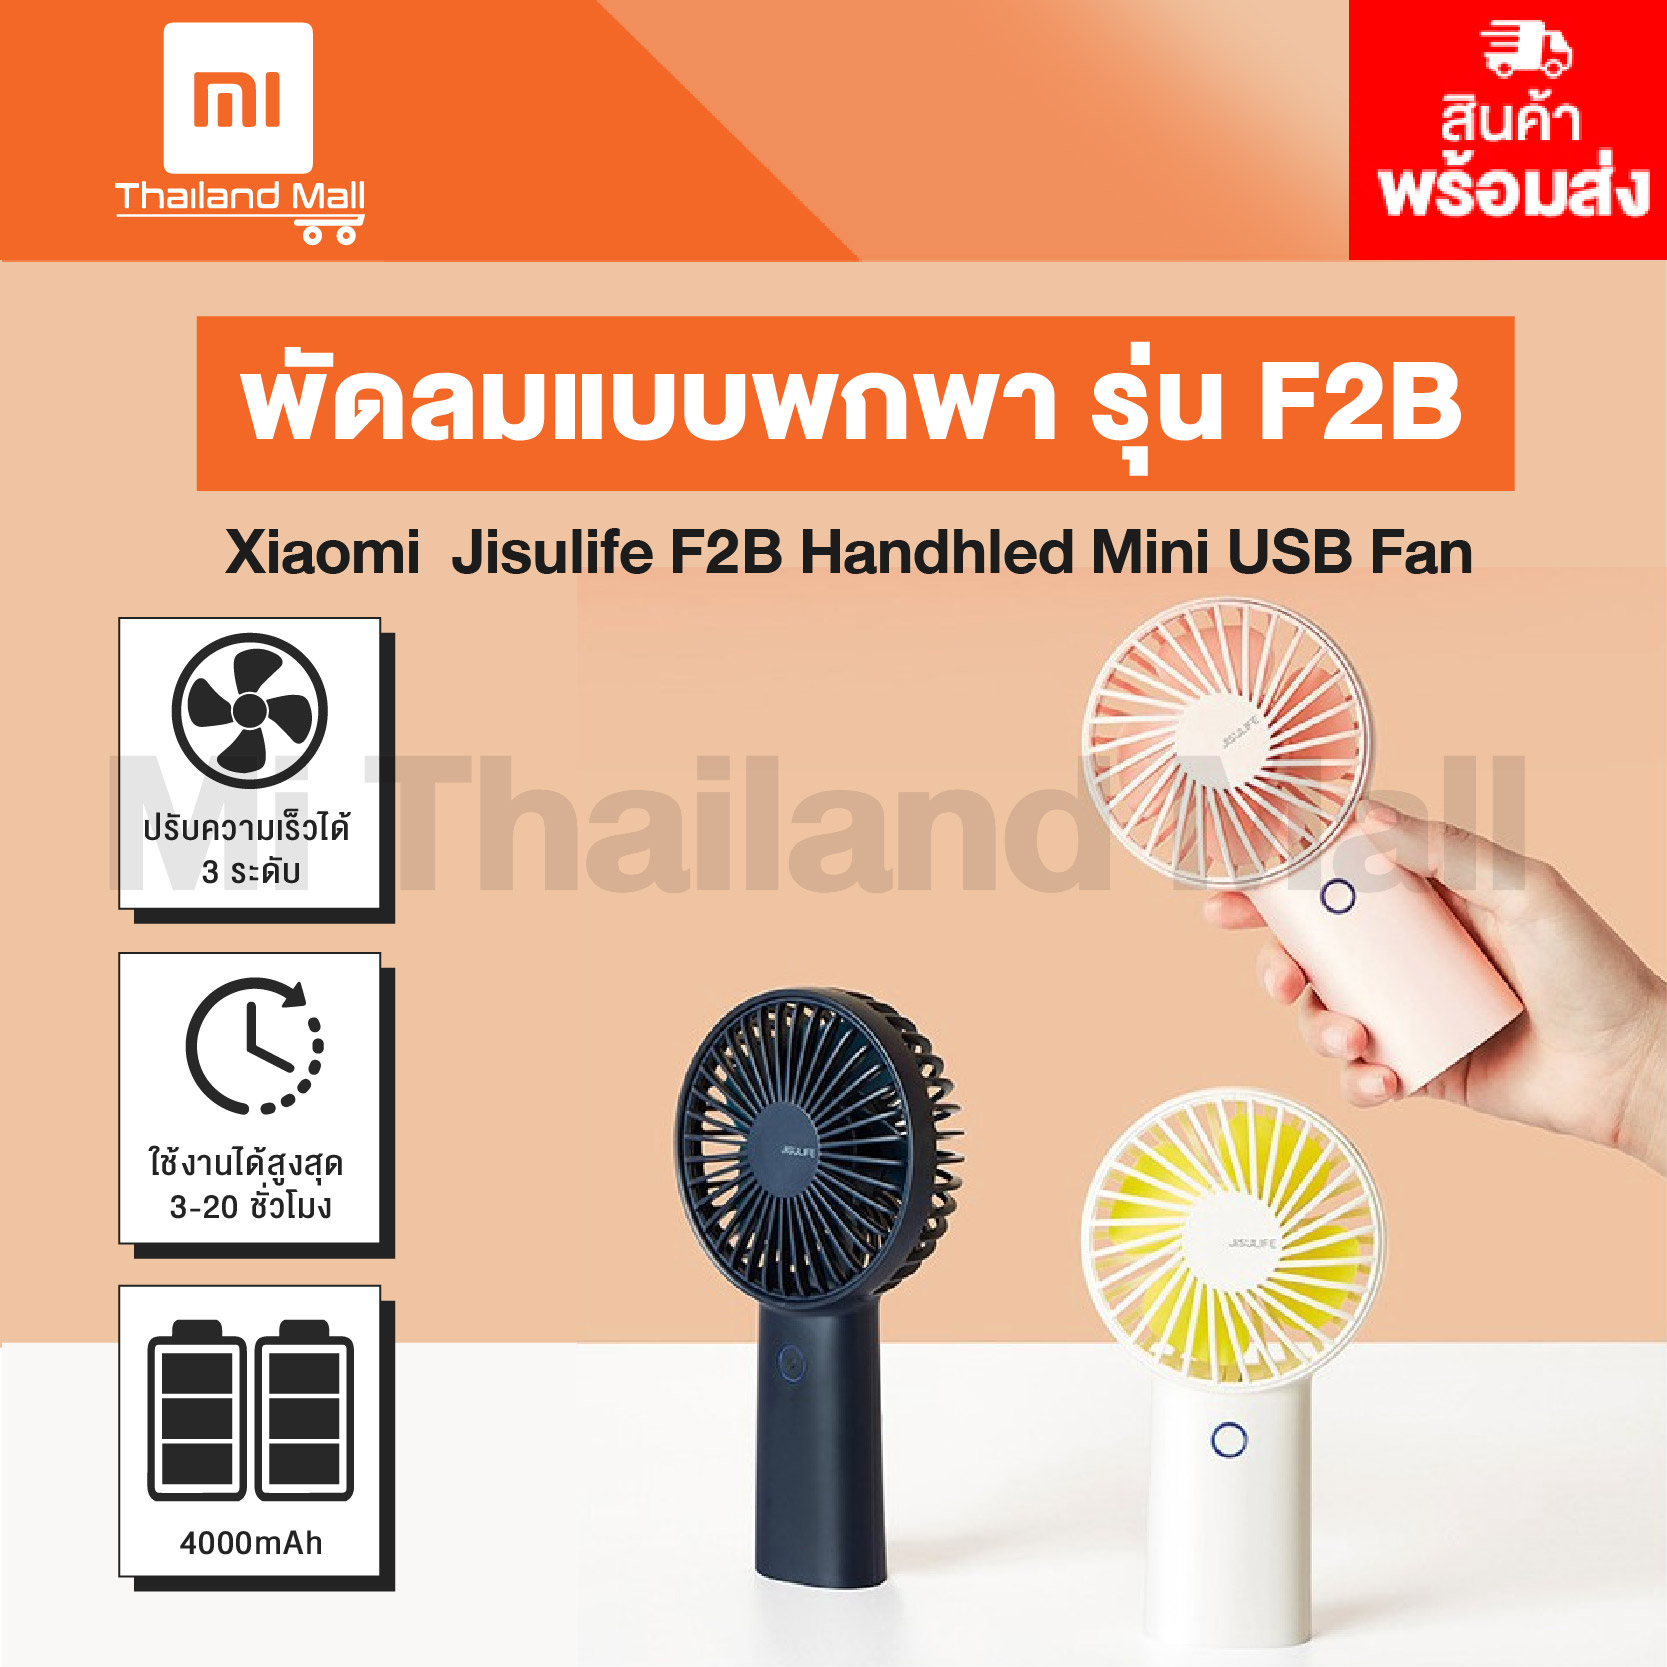 Xiaomi Jisulife F2B Handhled Mini USB Fan พัดลมพกพาขนาดเล็ก รุ่น F2B - ประกันโดย Mi Thailand Mall 6 เดือน